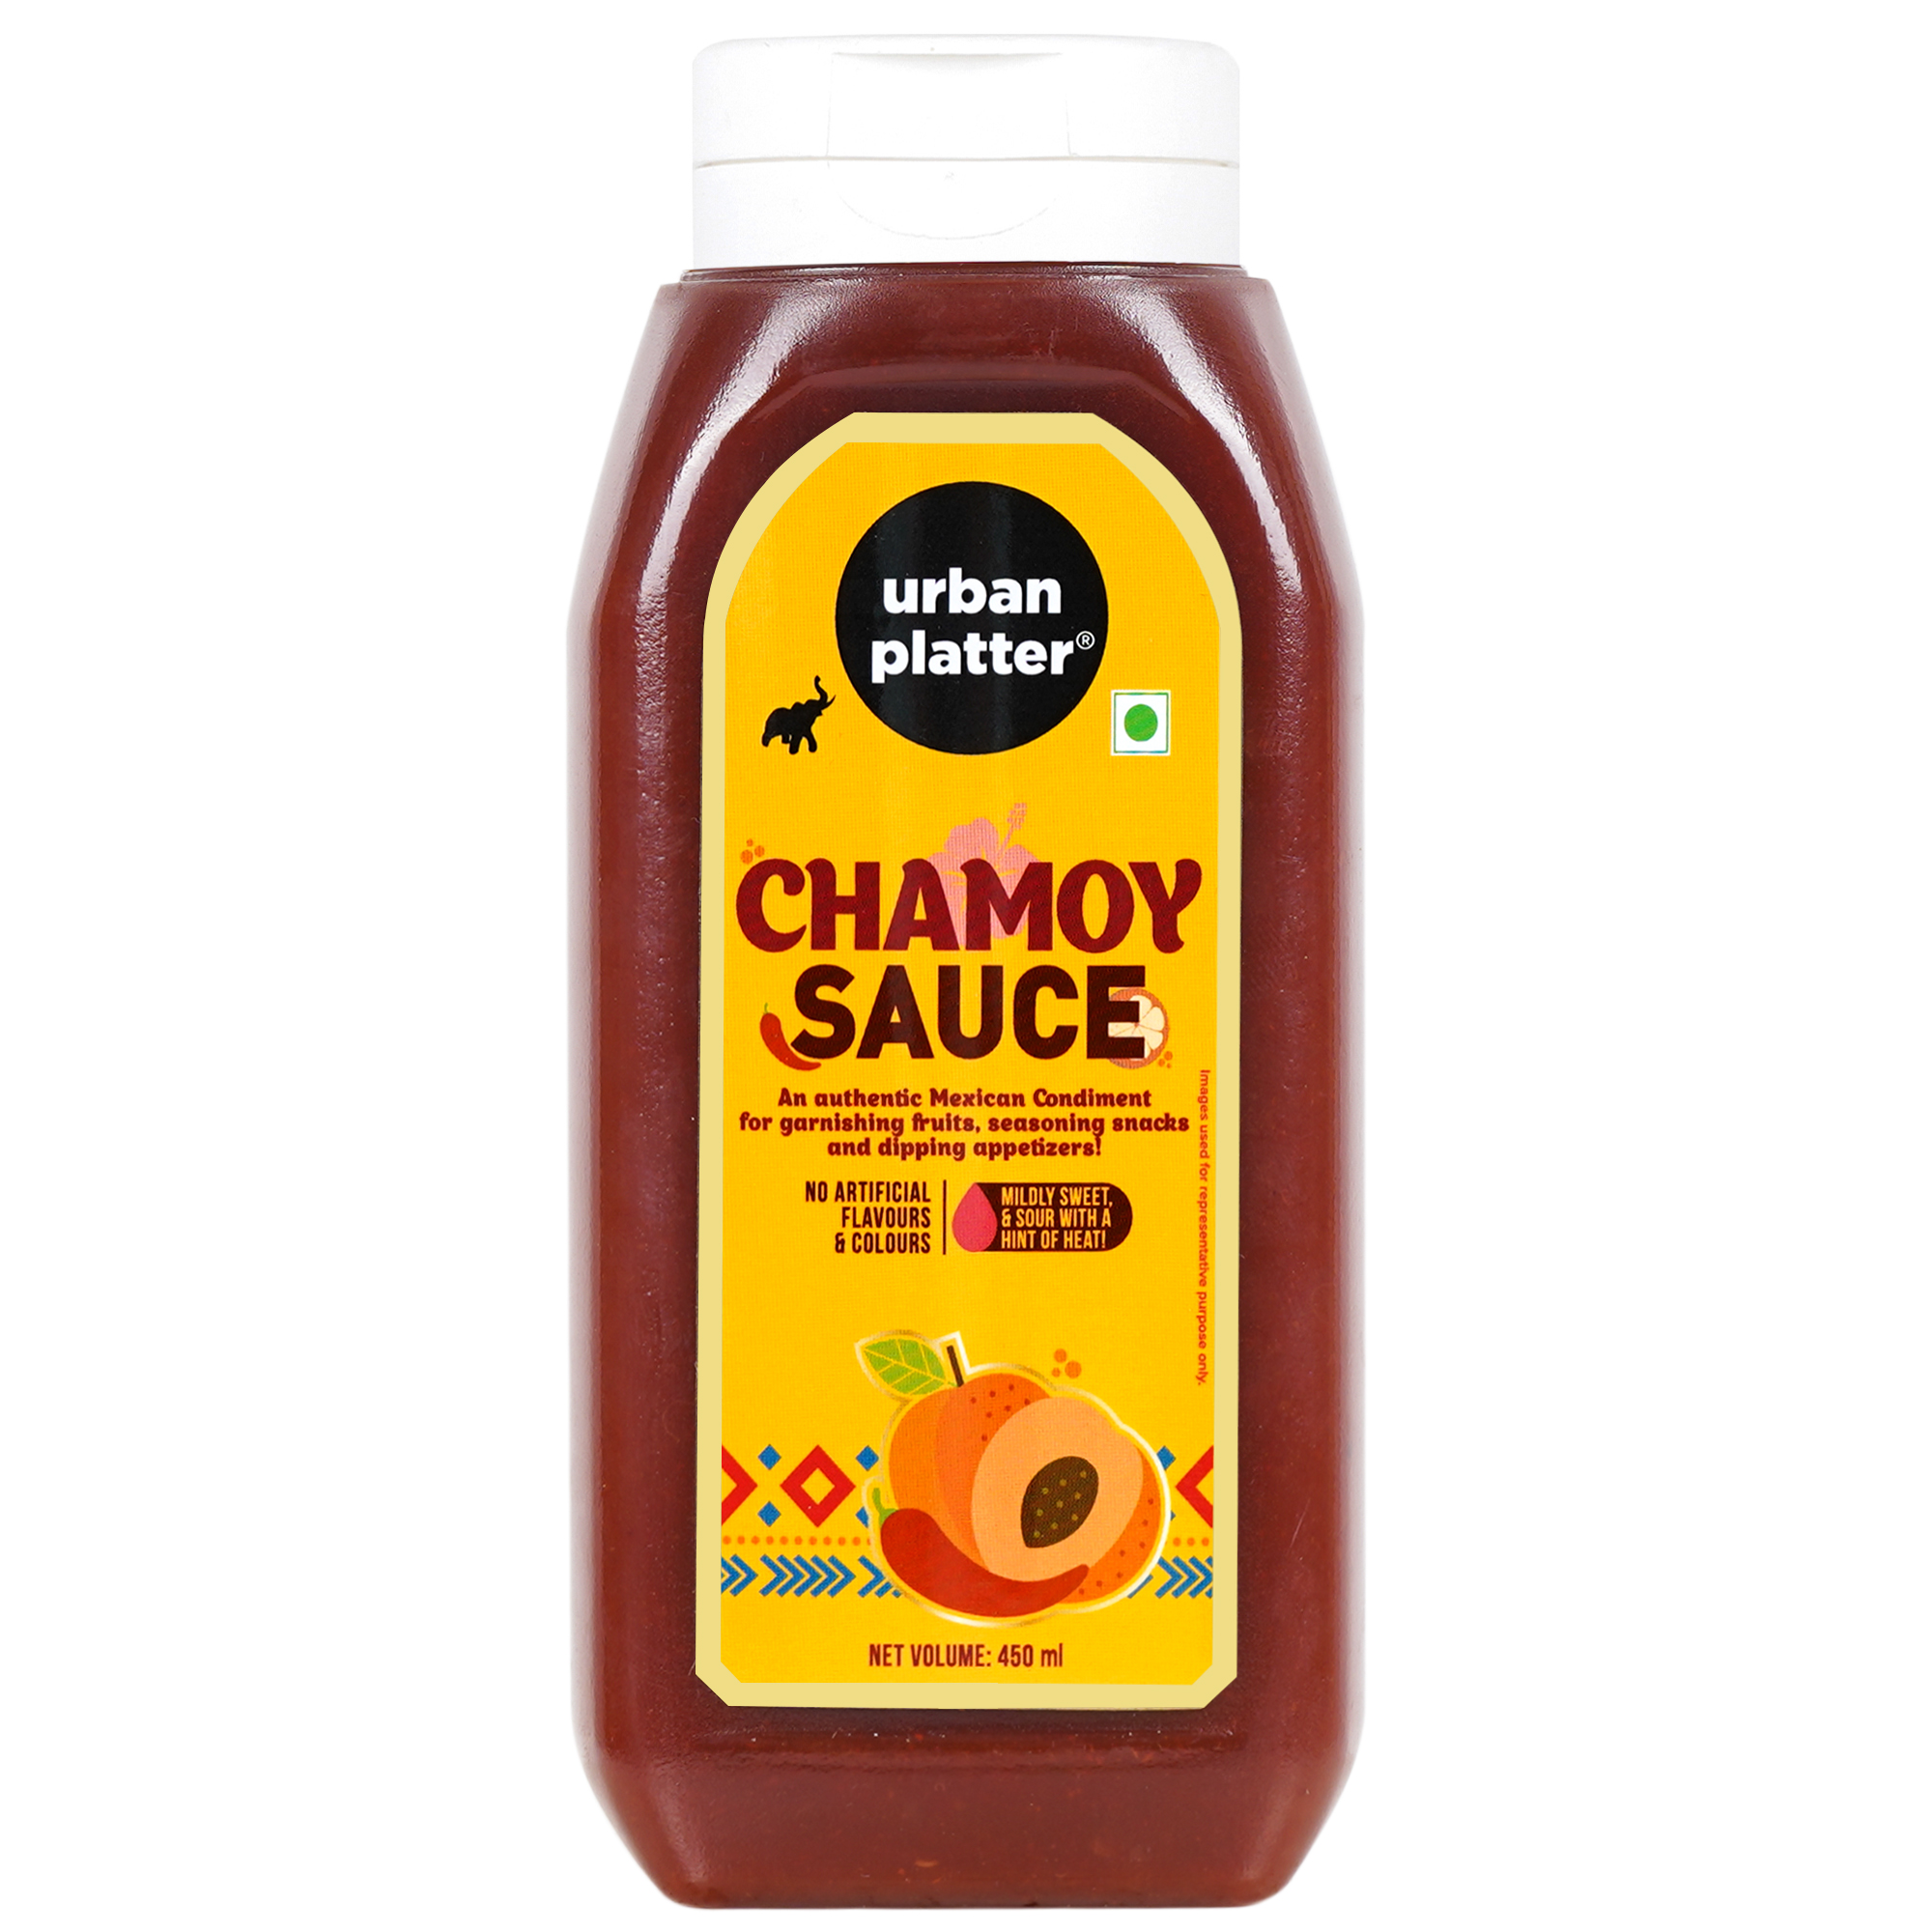 Chamoy (sauce) - Wikipedia